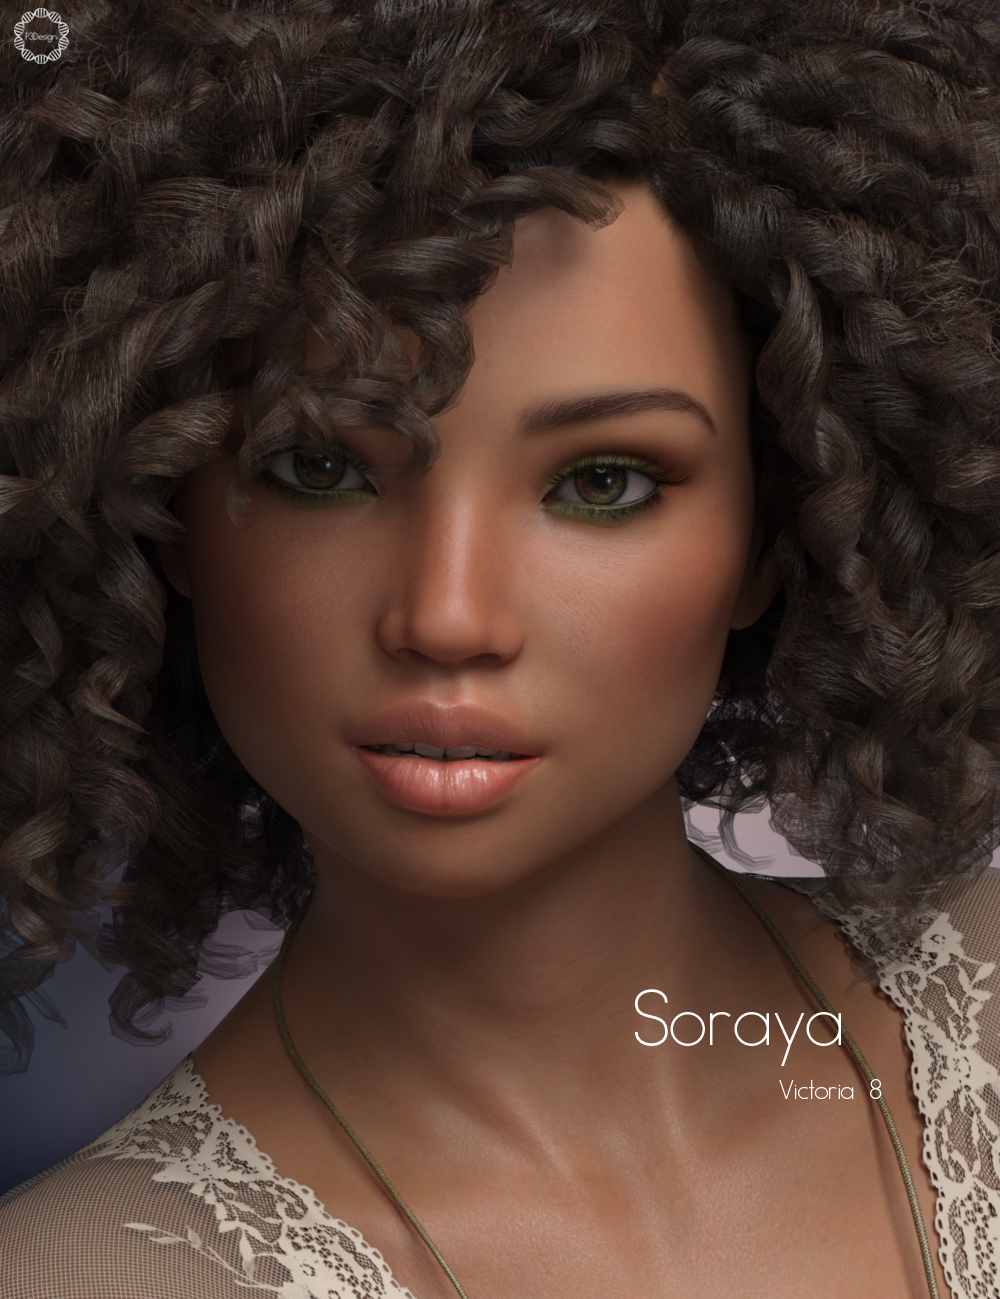 P3D Soraya for Victoria 8 by: P3Design, 3D Models by Daz 3D